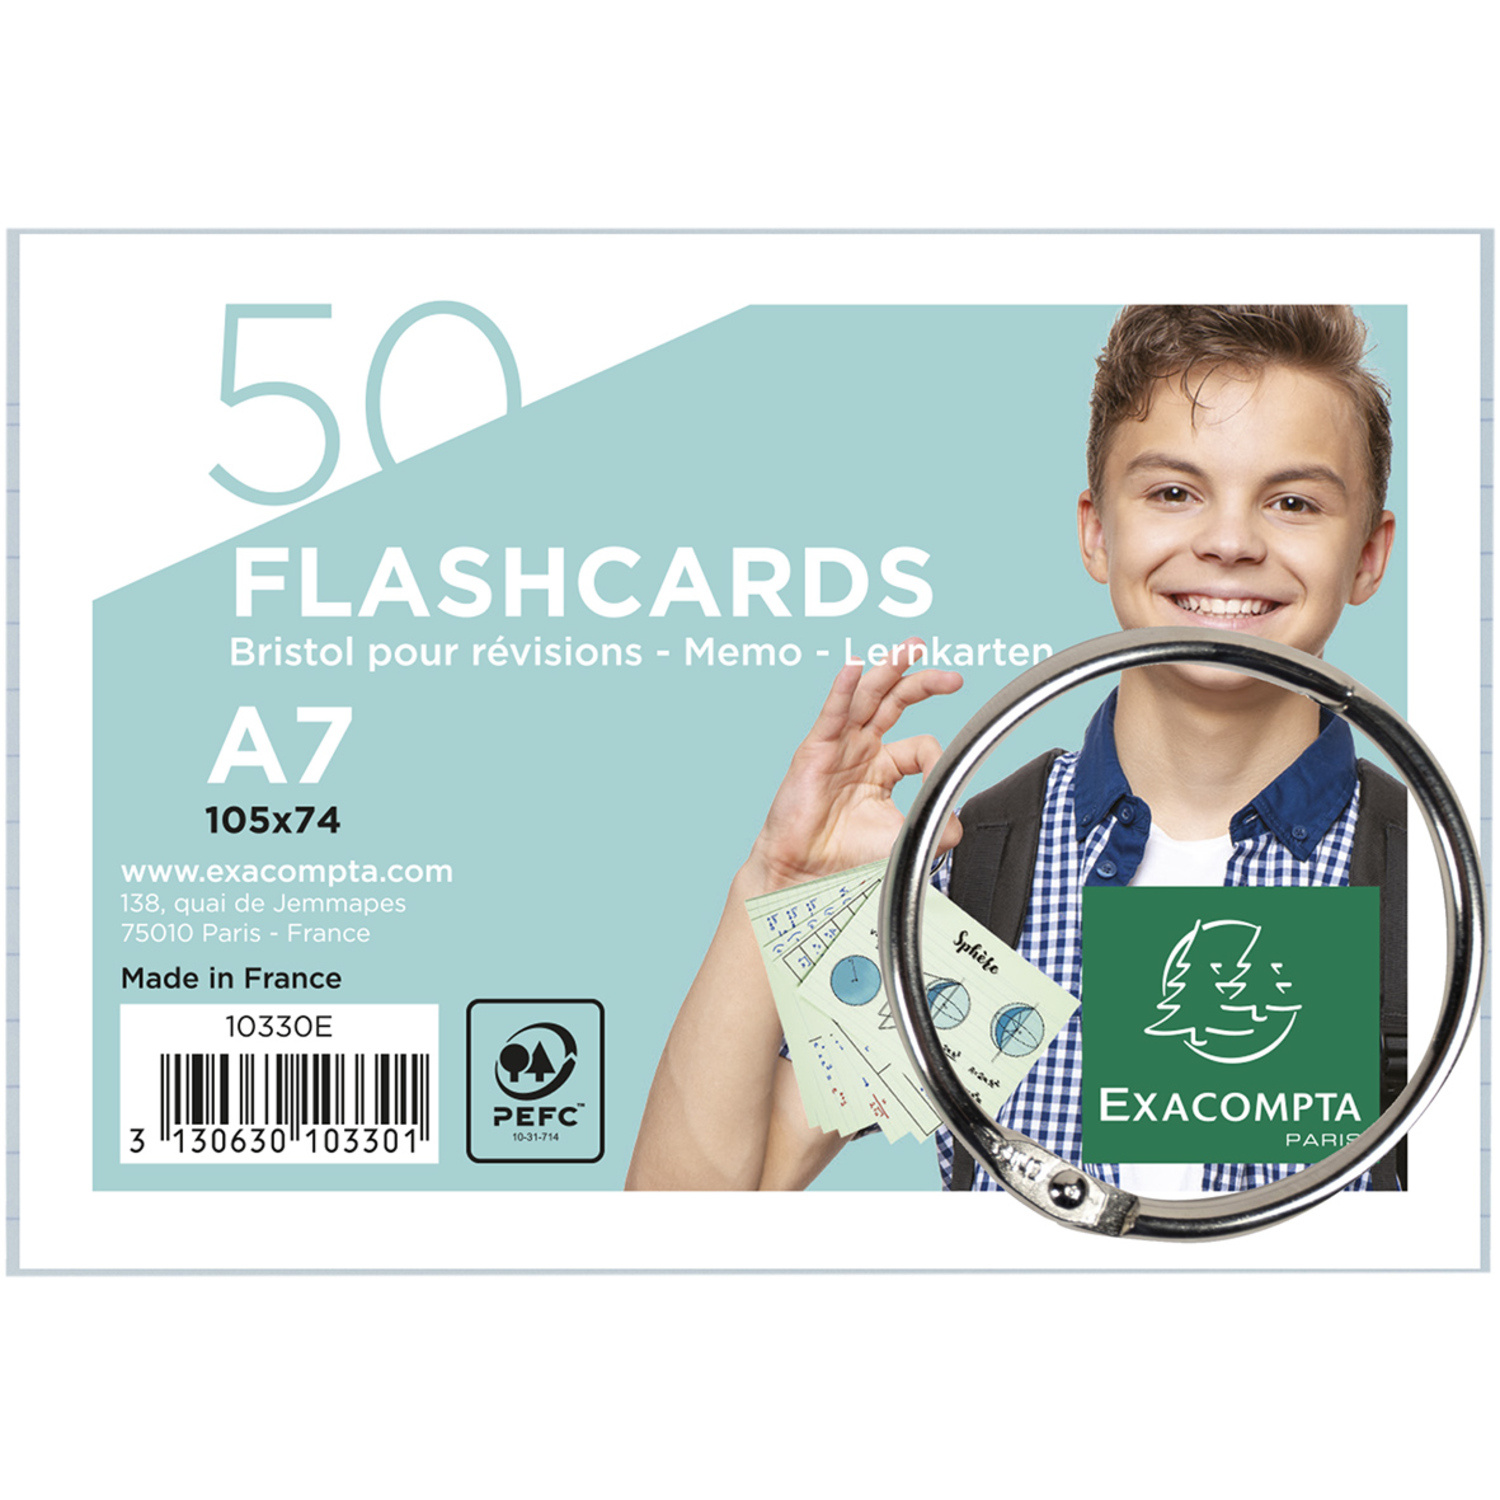 1 boîte à fiche achetée = 1 paquet de flash cards A7 offert